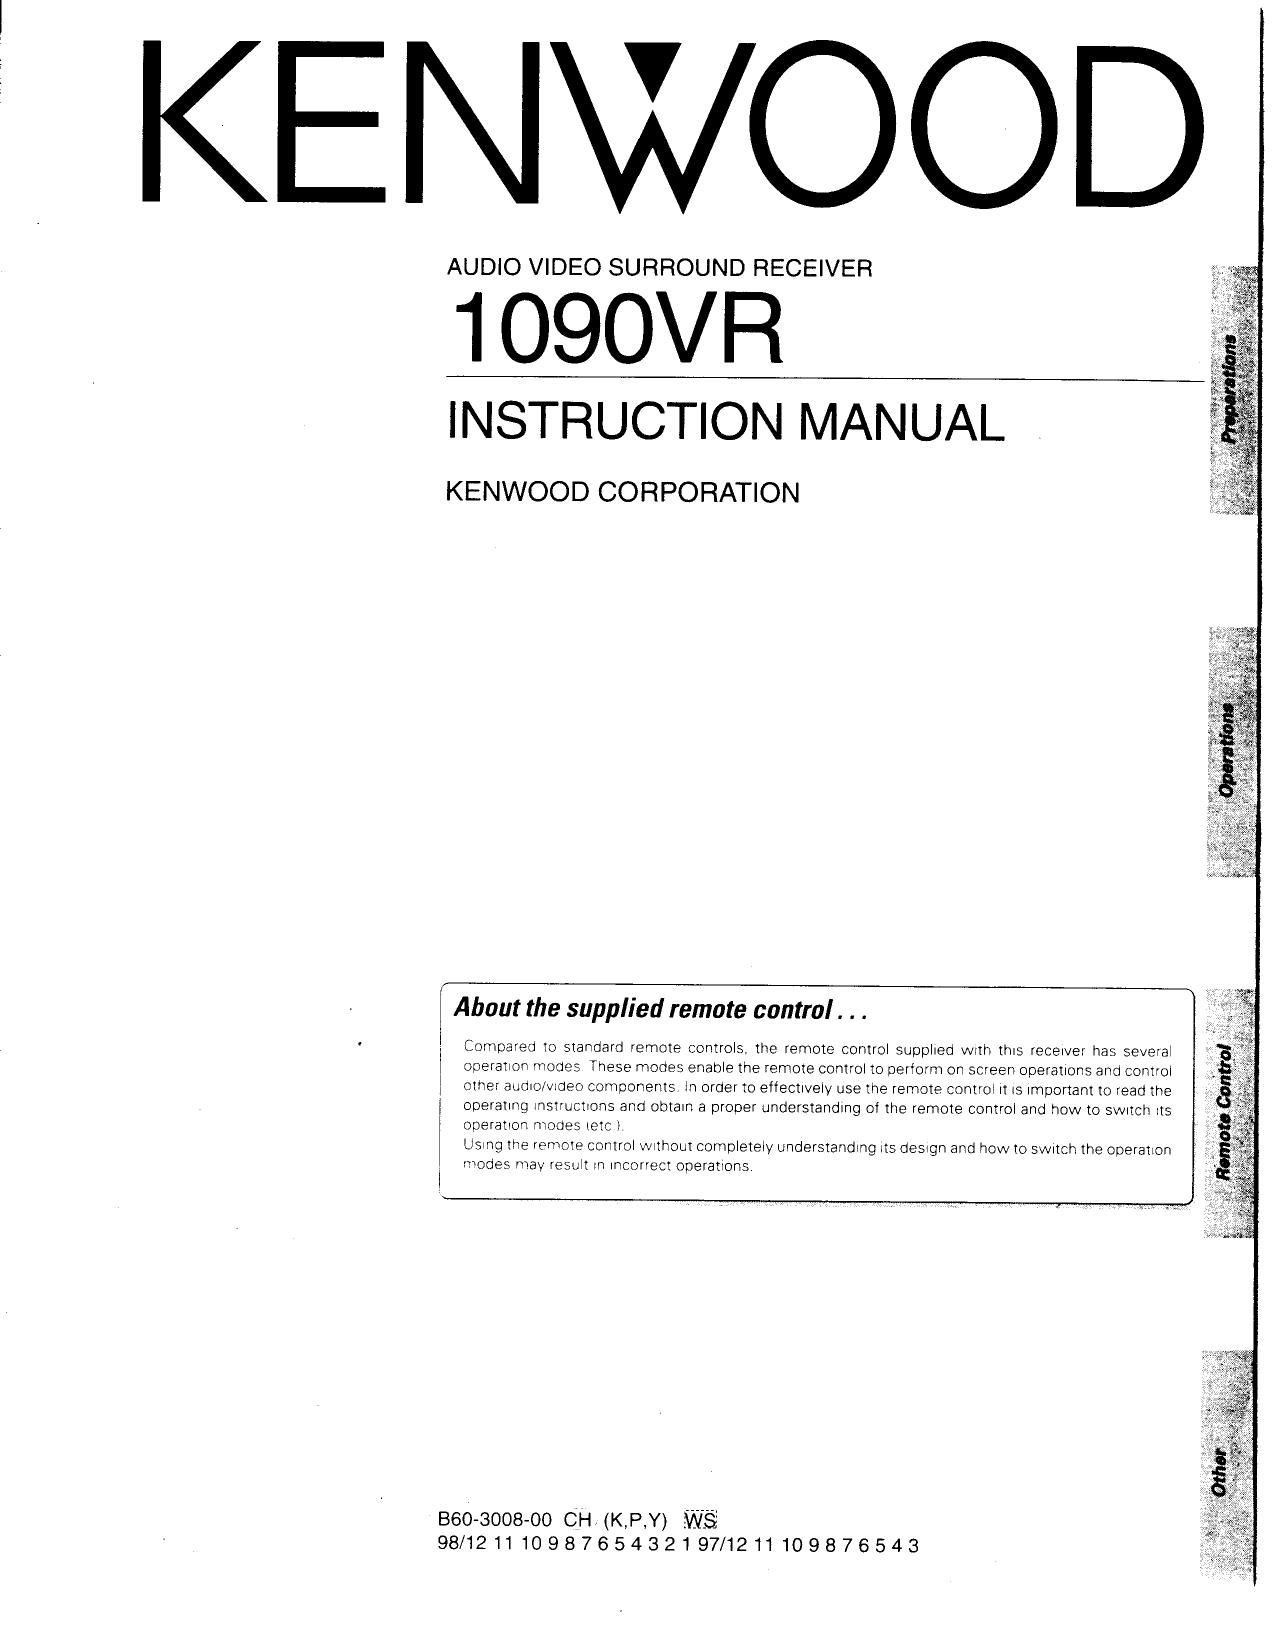 Kenwood 1090 VR Owners Manual